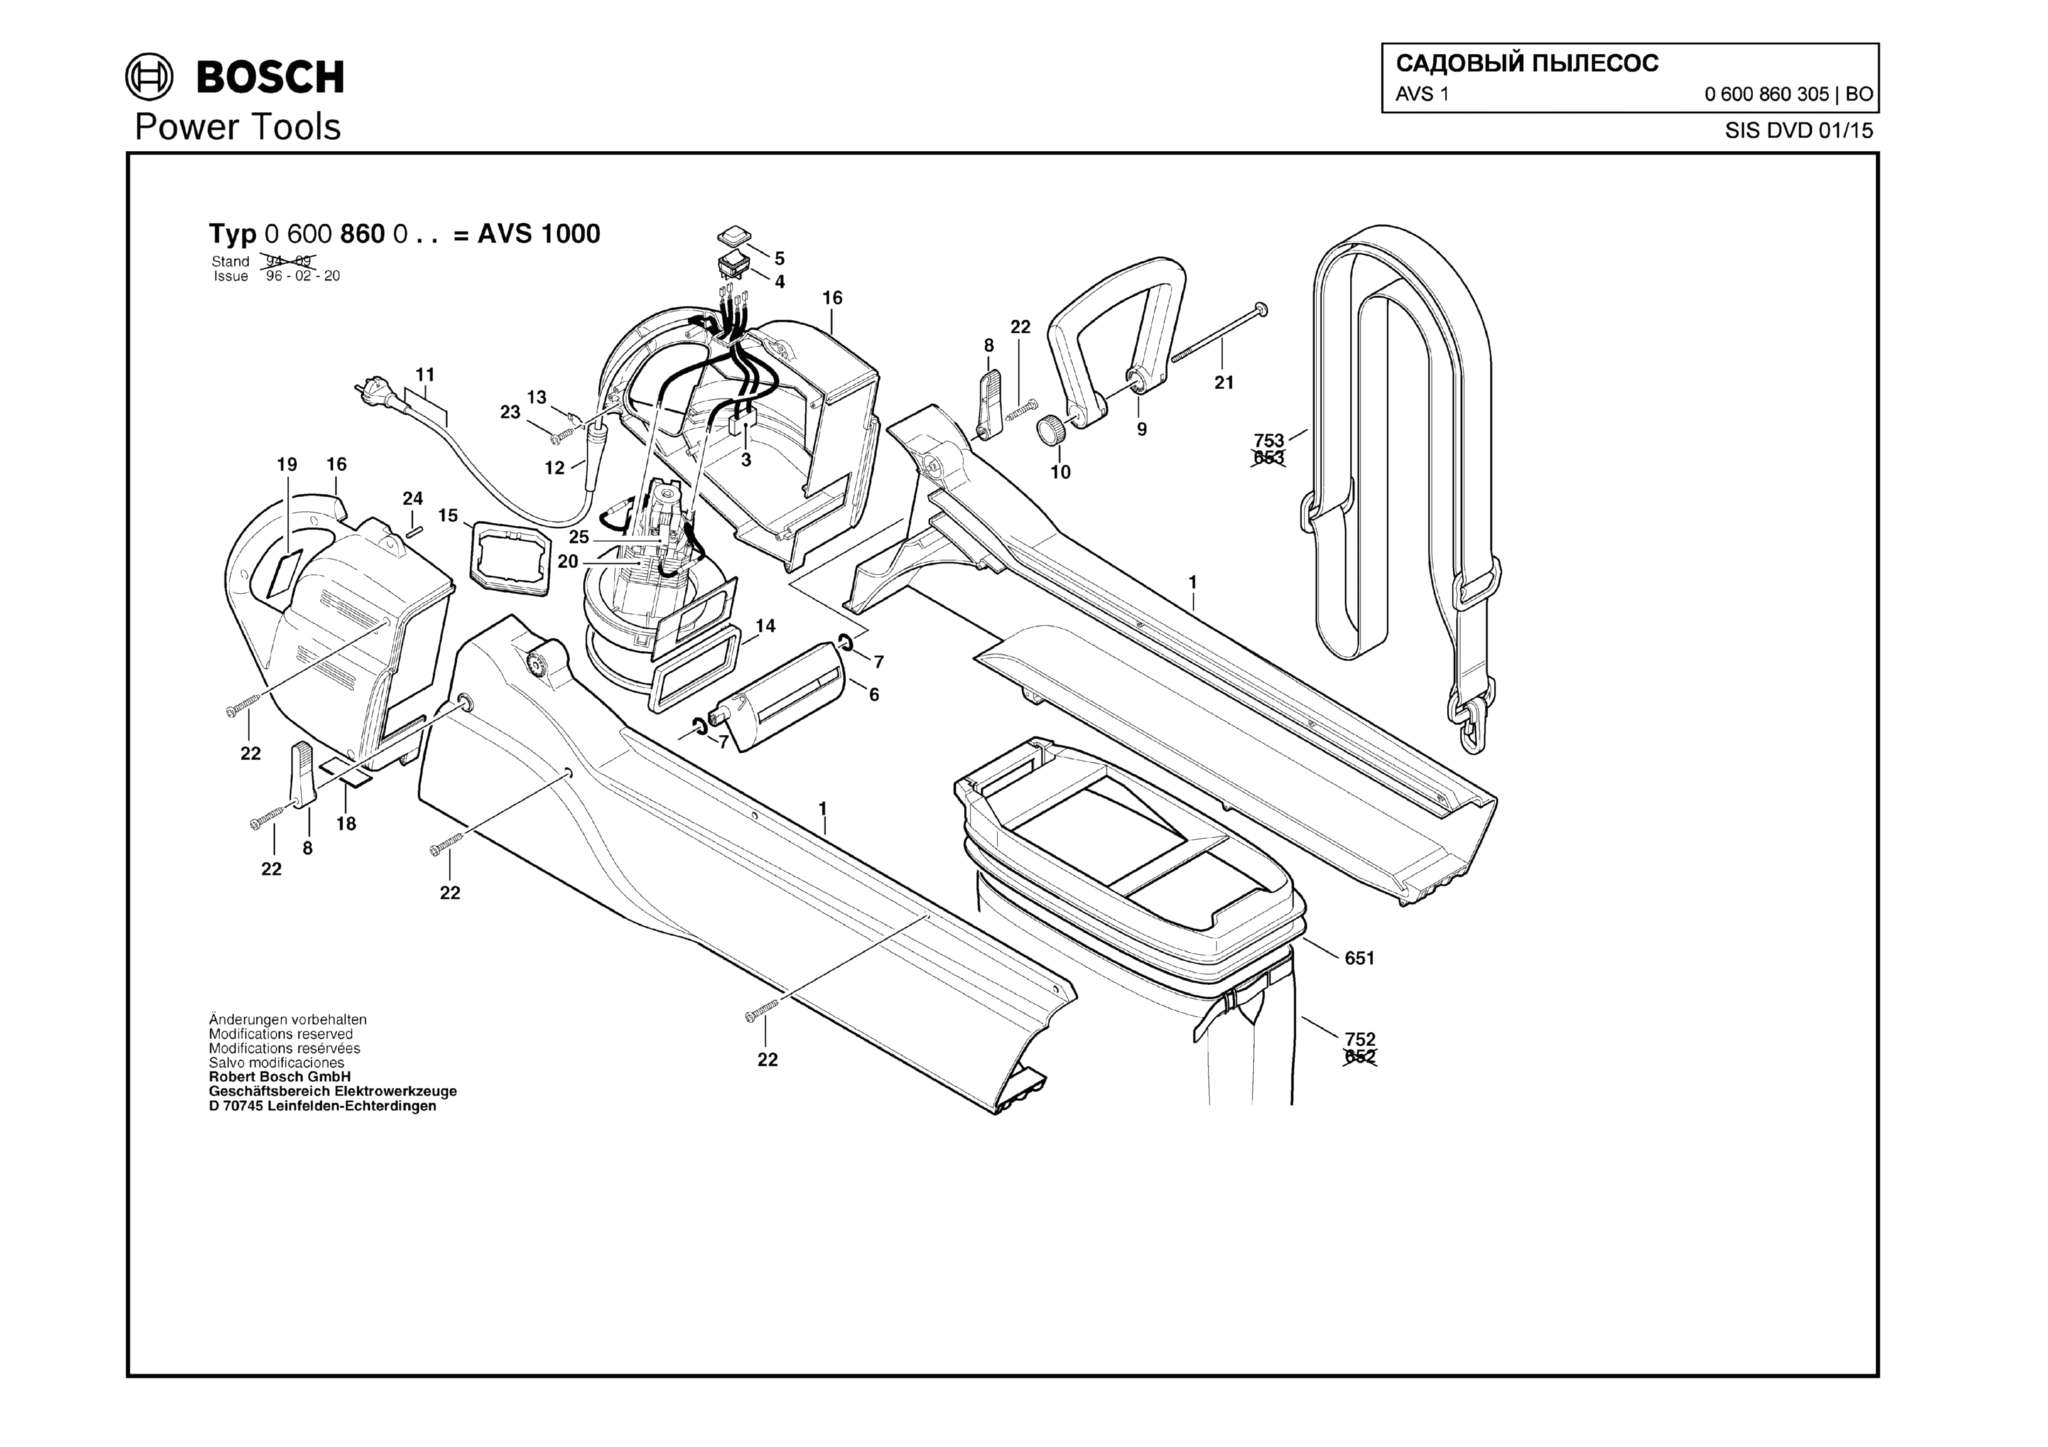 Запчасти, схема и деталировка Bosch AVS 1 (ТИП 0600860305)